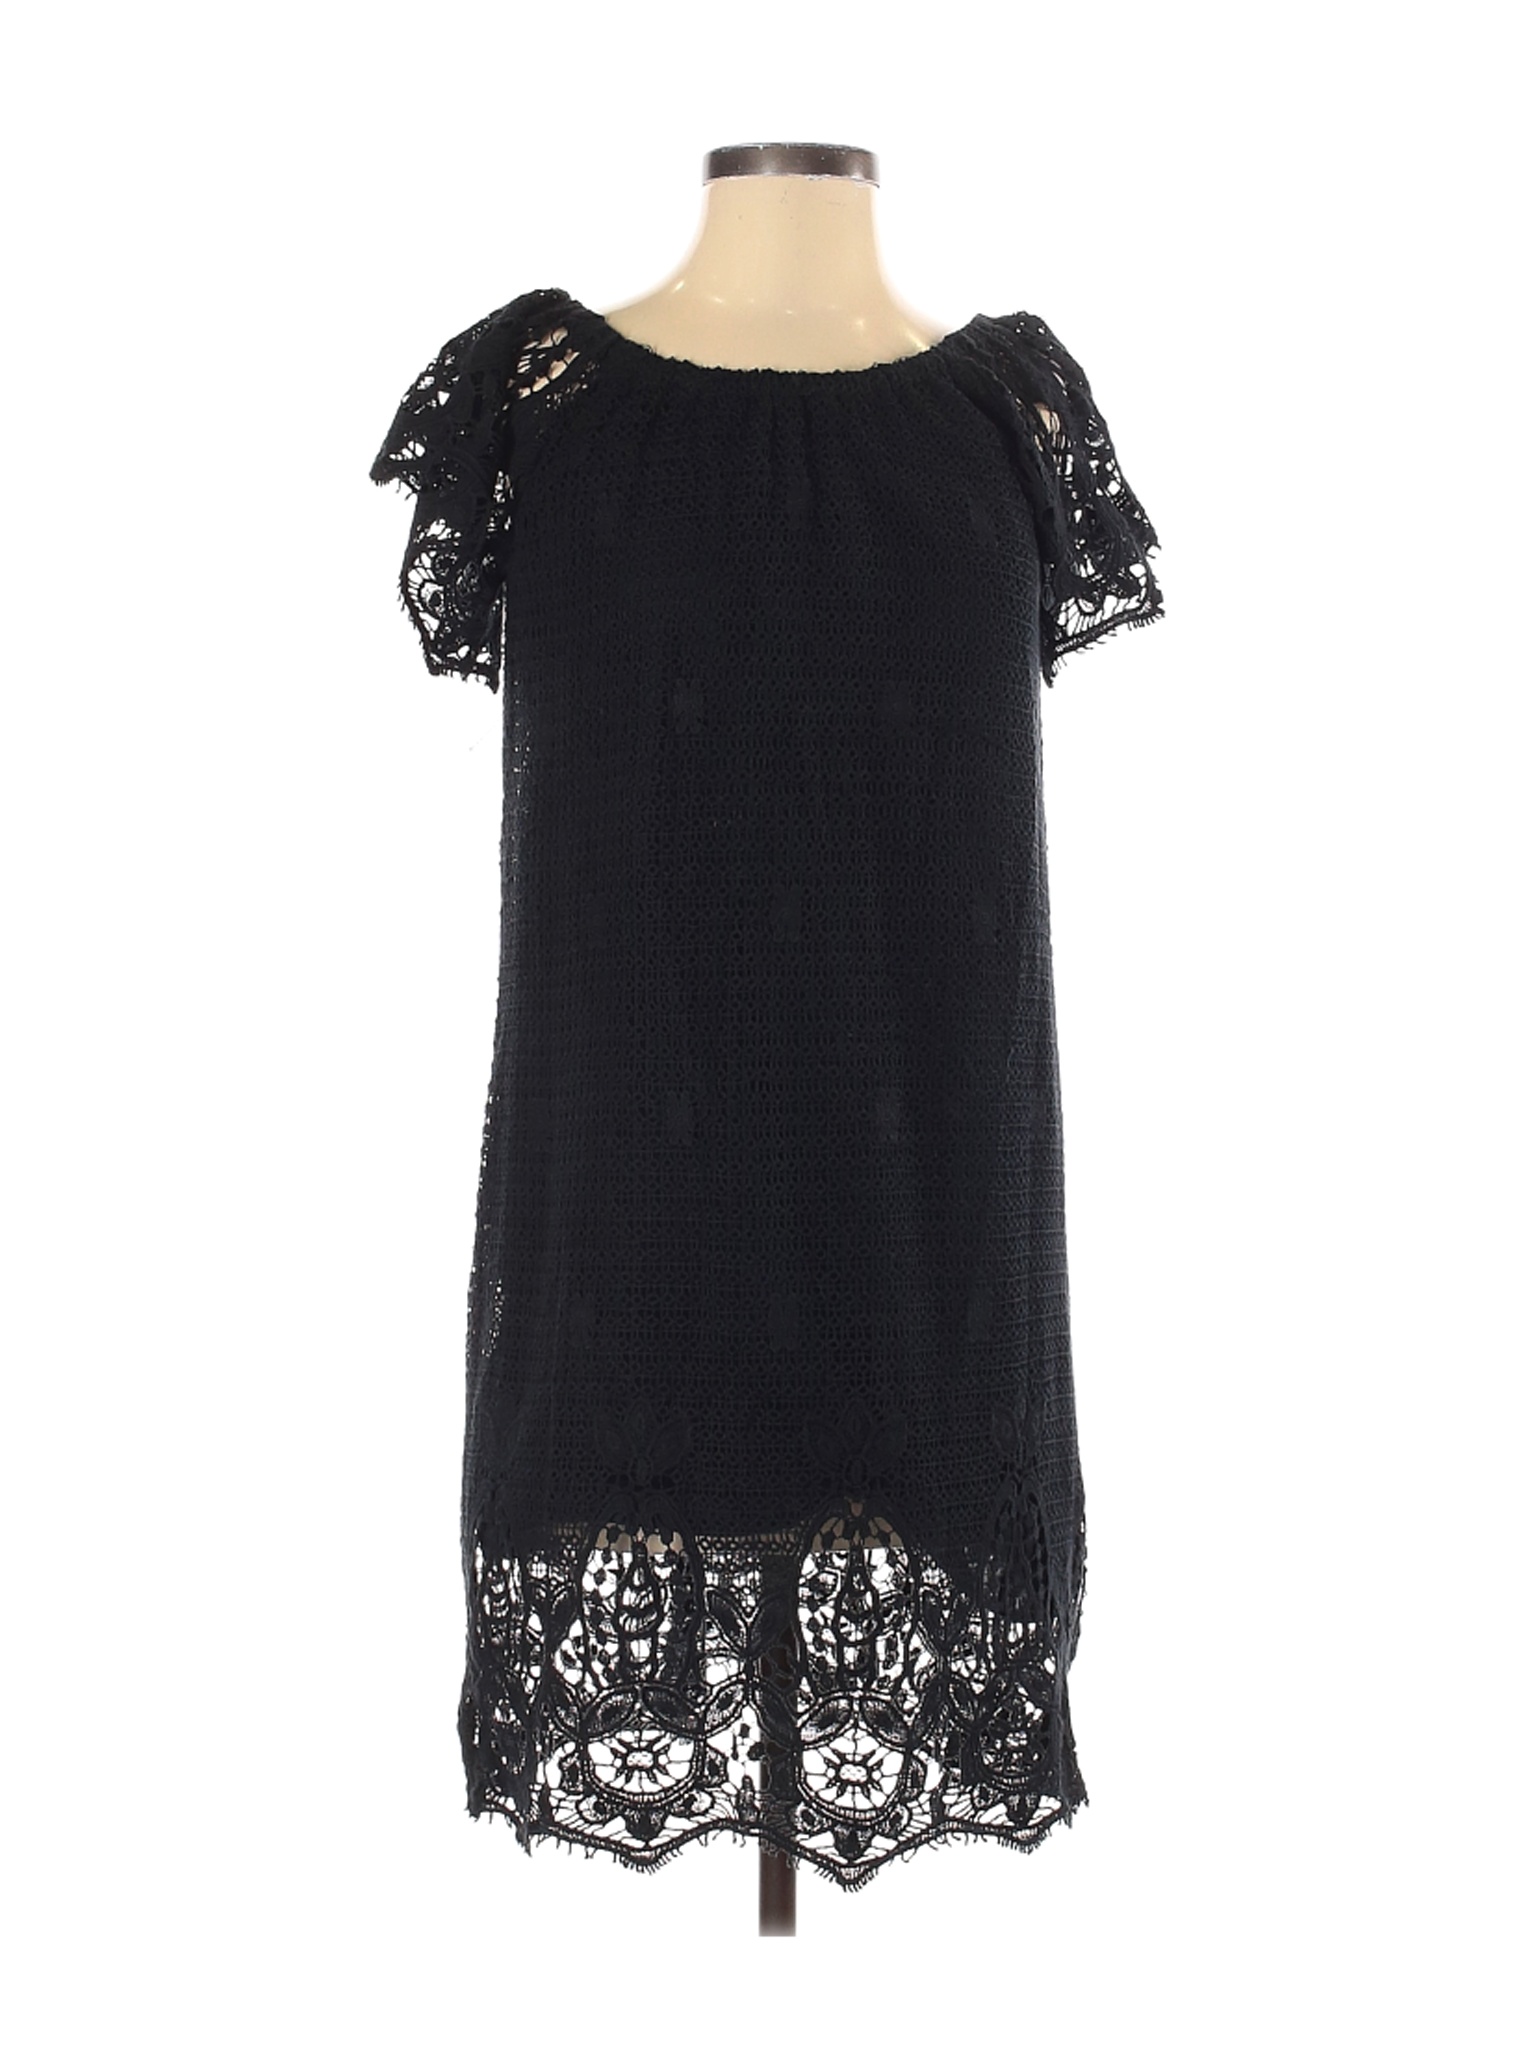 Scoop Women Black Casual Dress S | eBay